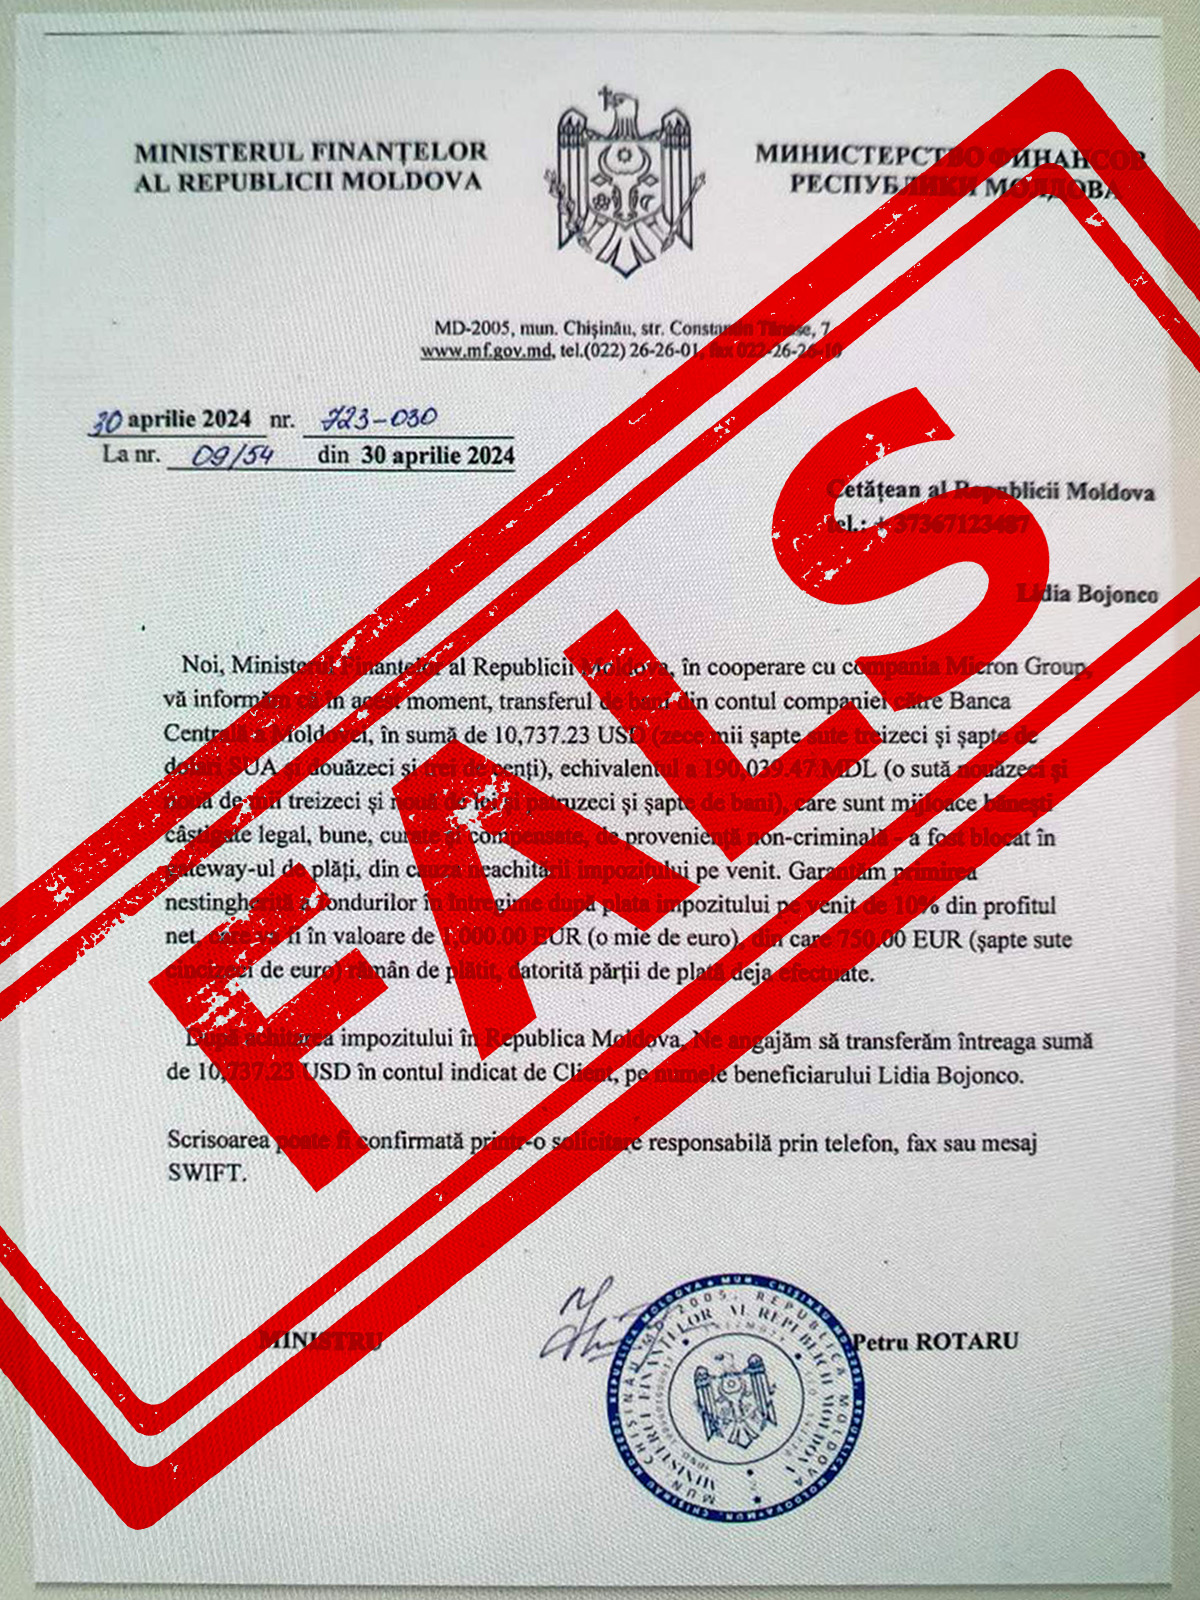 (ФОТО) Новый вид мошенничества в Молдове. Граждане получили фейковые письма с требованием заплатить подоходный налог